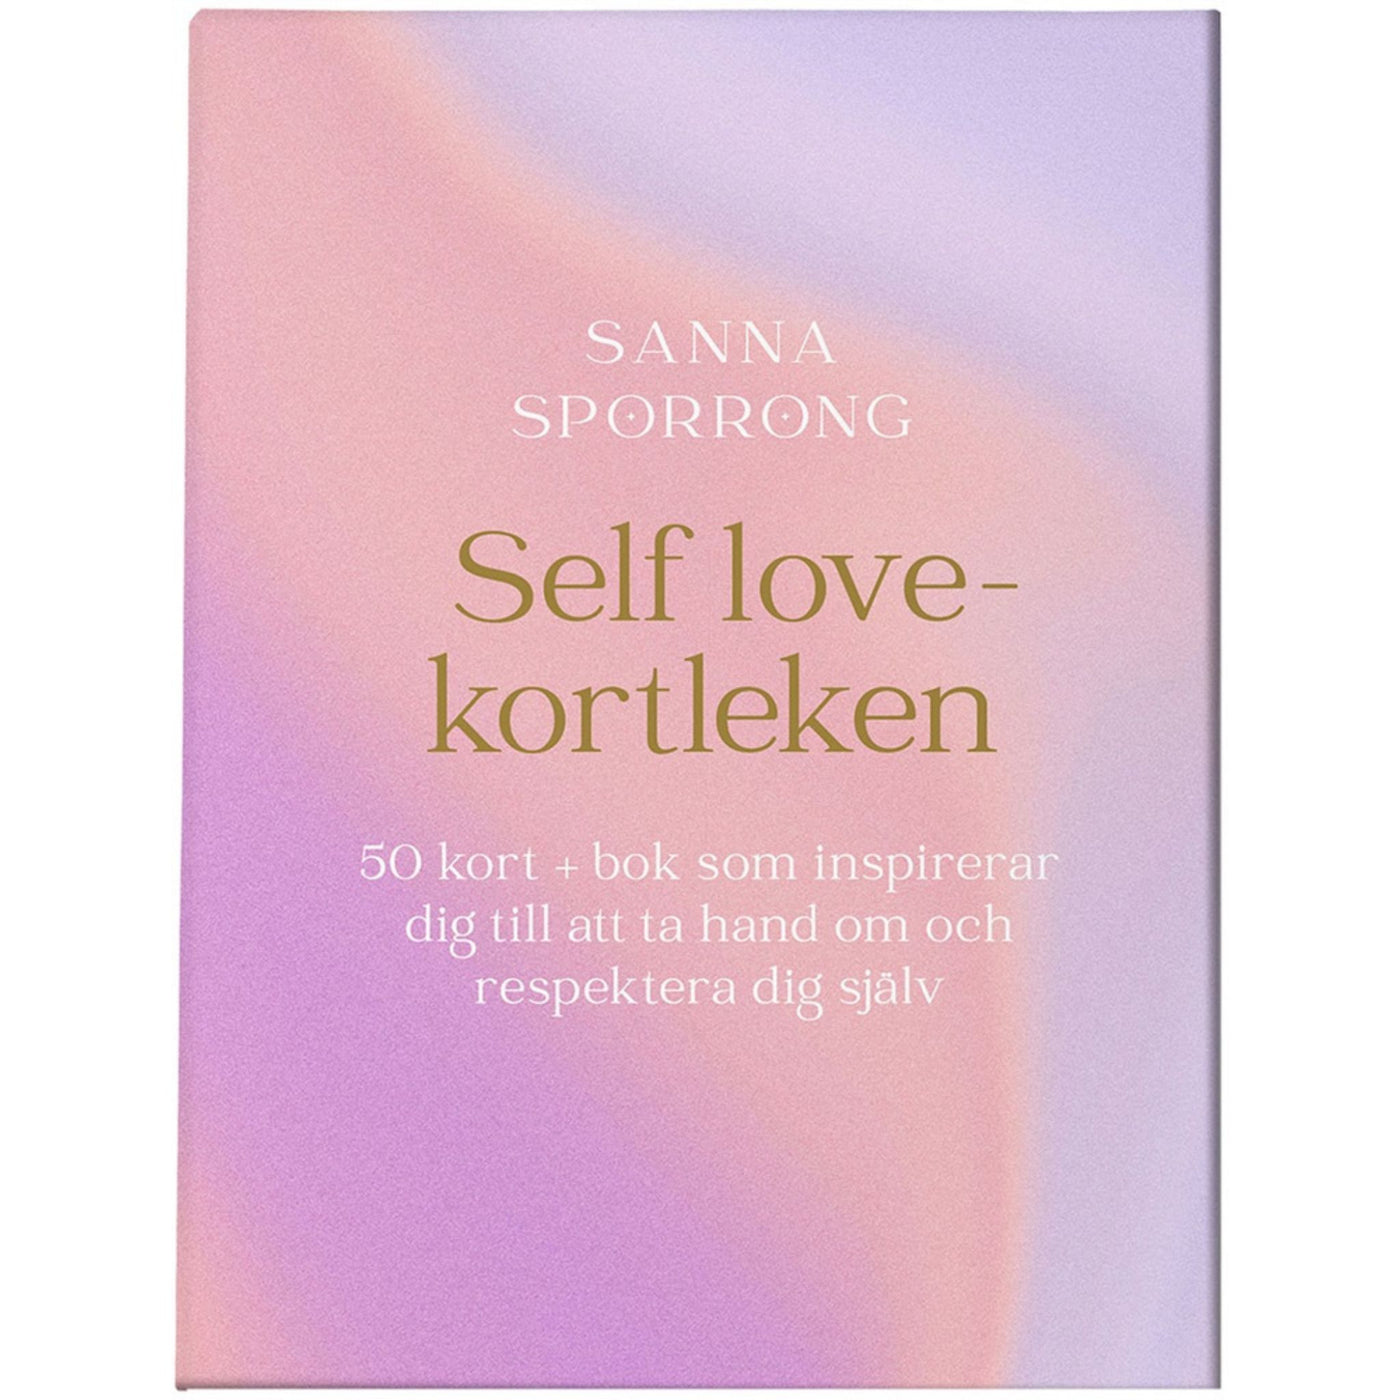 Self love - kortleken av Sanna Sporrong